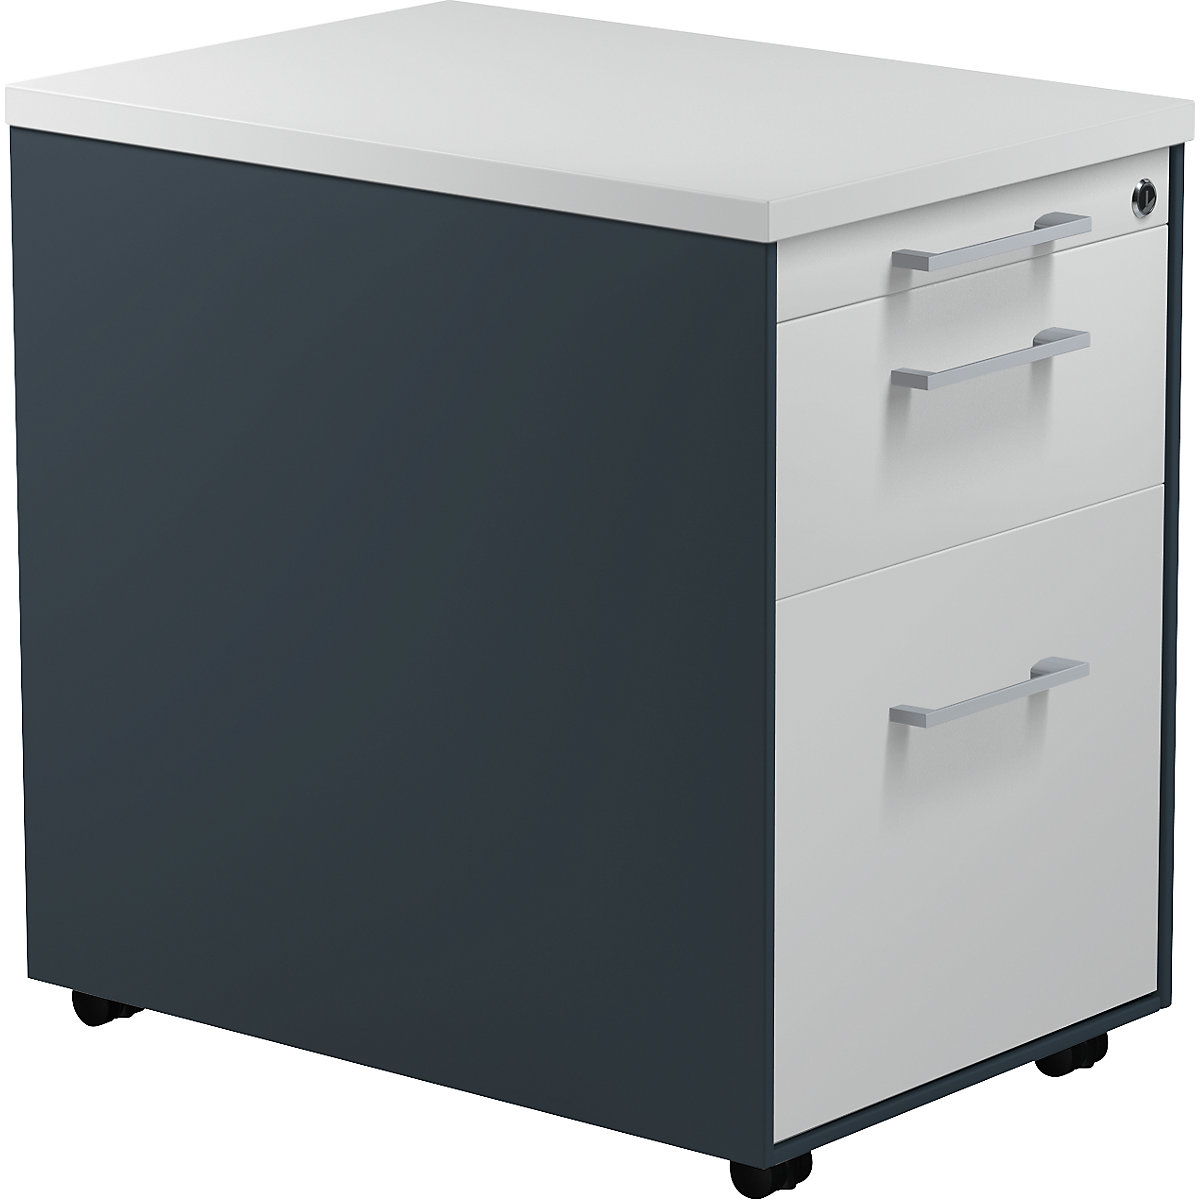 Mobile pedestal on castors – mauser, HxD 579 x 600 mm, 1 drawer, 1 suspension file drawer, charcoal / light grey / light grey-6